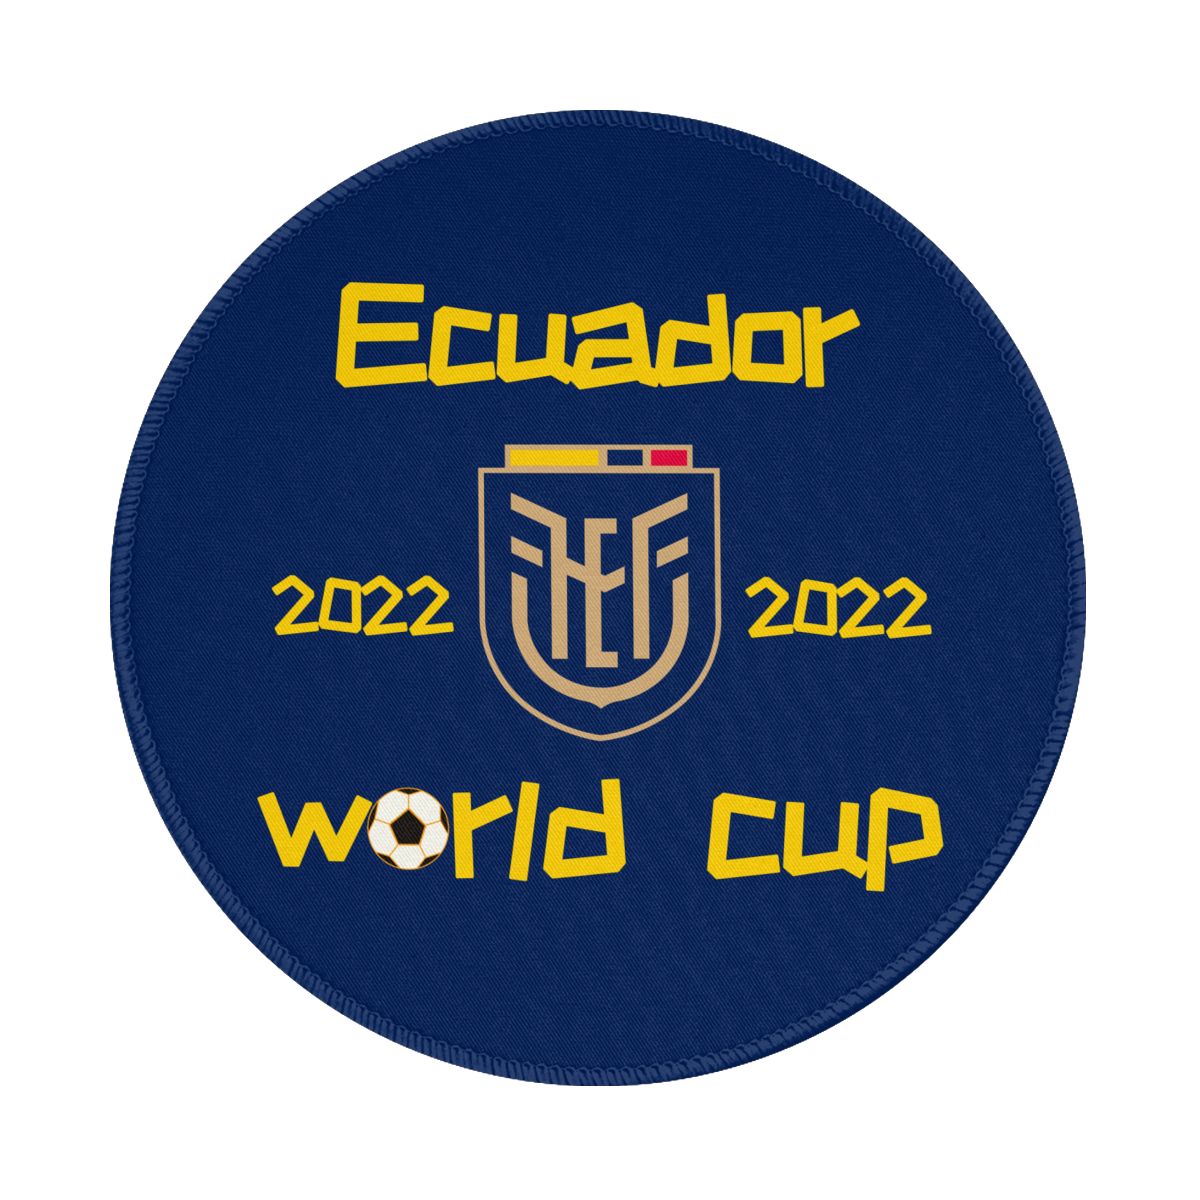 Ecuador 2022 World Cup Team Logo Round Non-Slip Thick Rubber Modern Gaming Mousepad